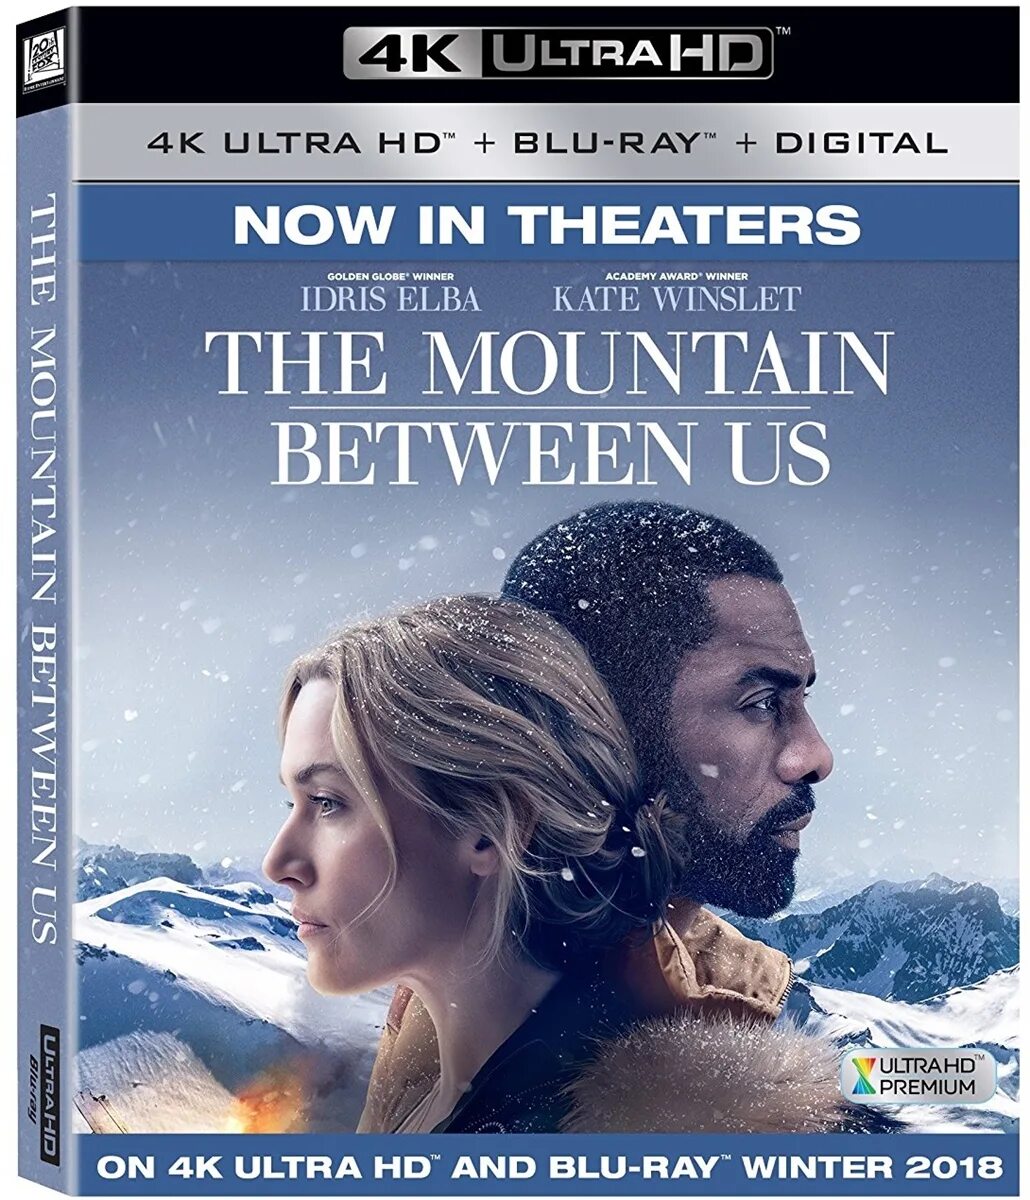 Between us now. Blu-ray. Между нами горы. Между нами горы. Mountain between us Постер.